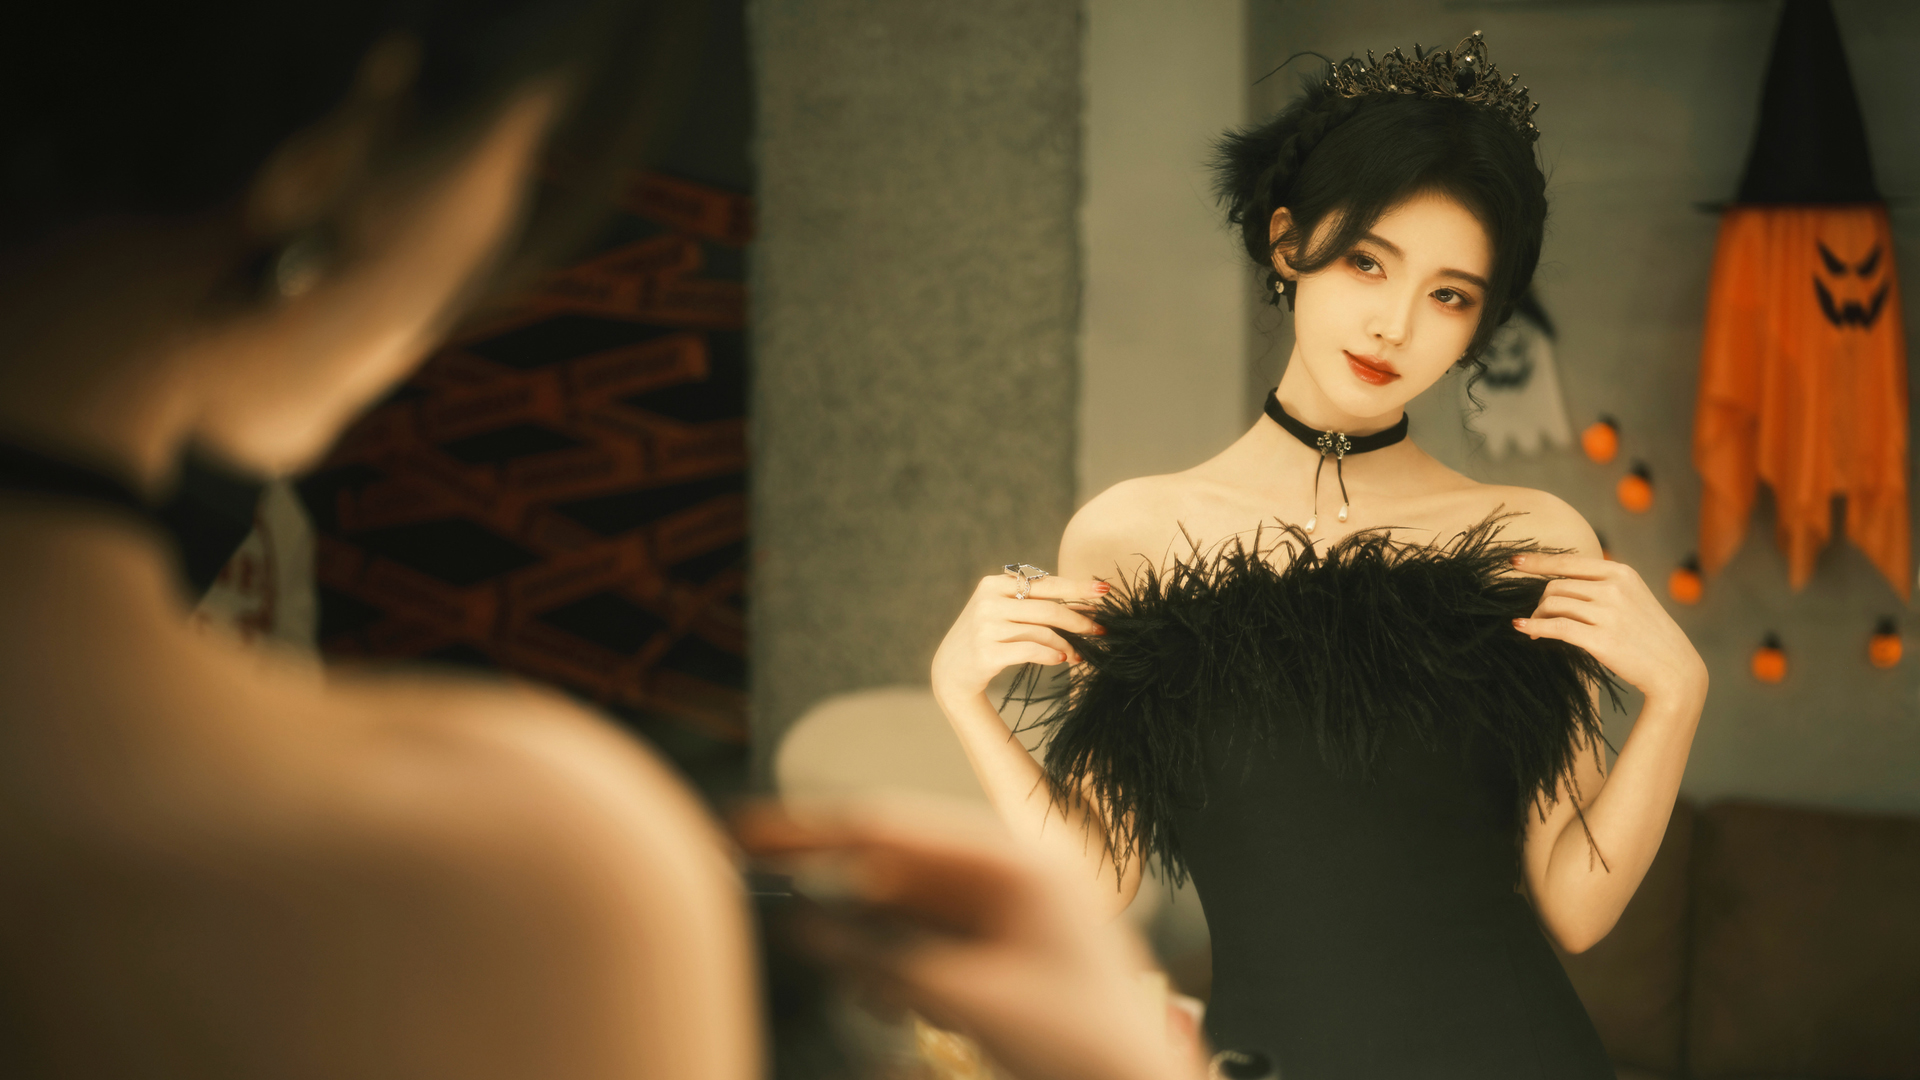 鞠婧祎 黑色礼服裙子 镜子 梳妆台 高清 美女 壁纸